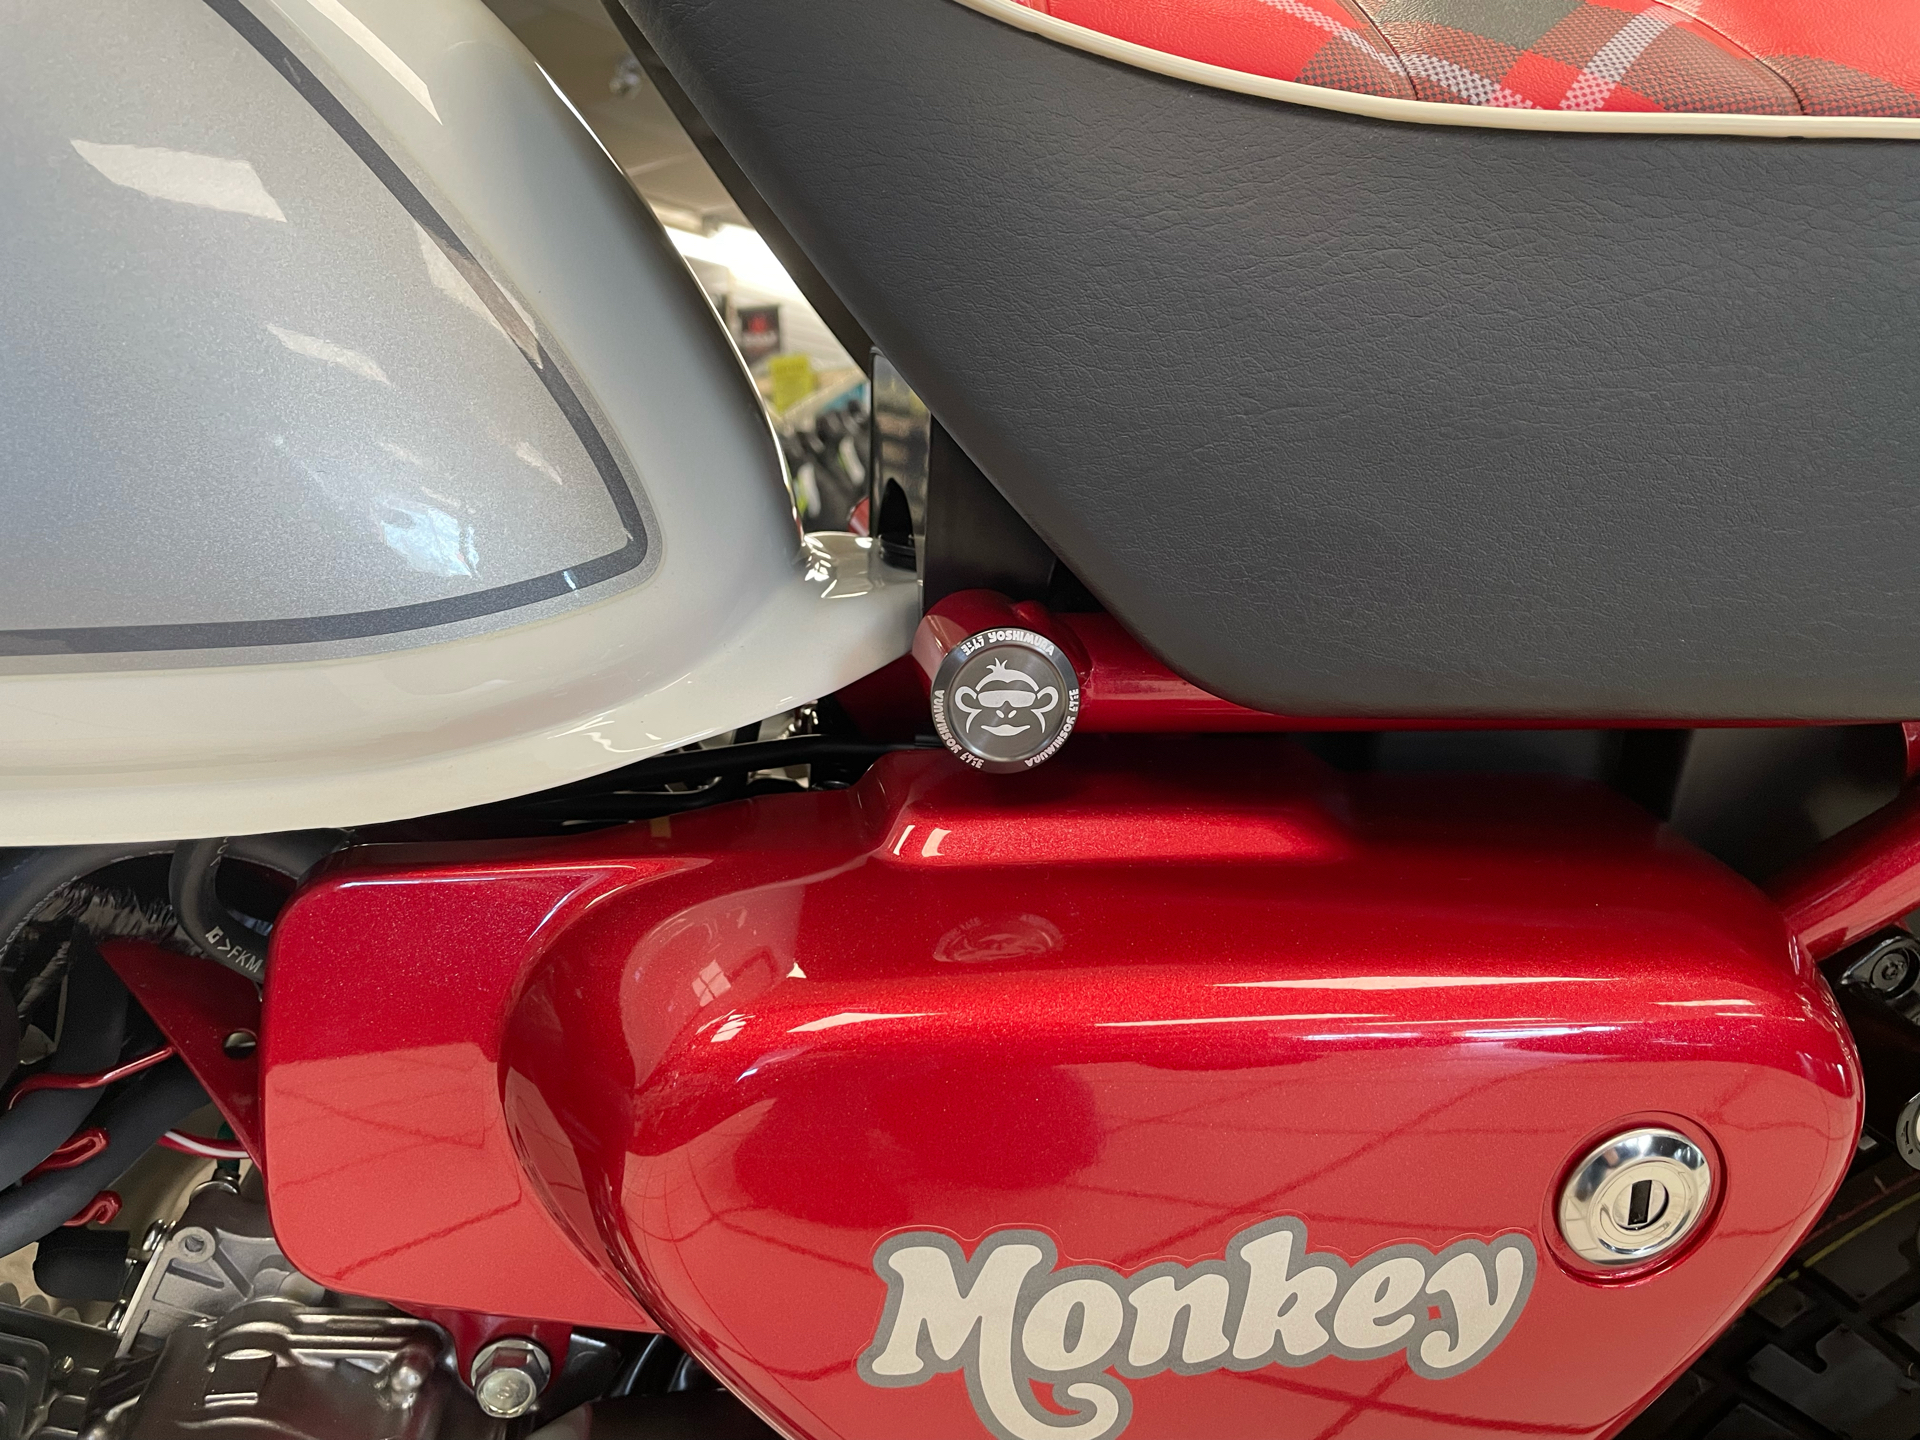 2023 Honda Monkey ABS in Oklahoma City, Oklahoma - Photo 5